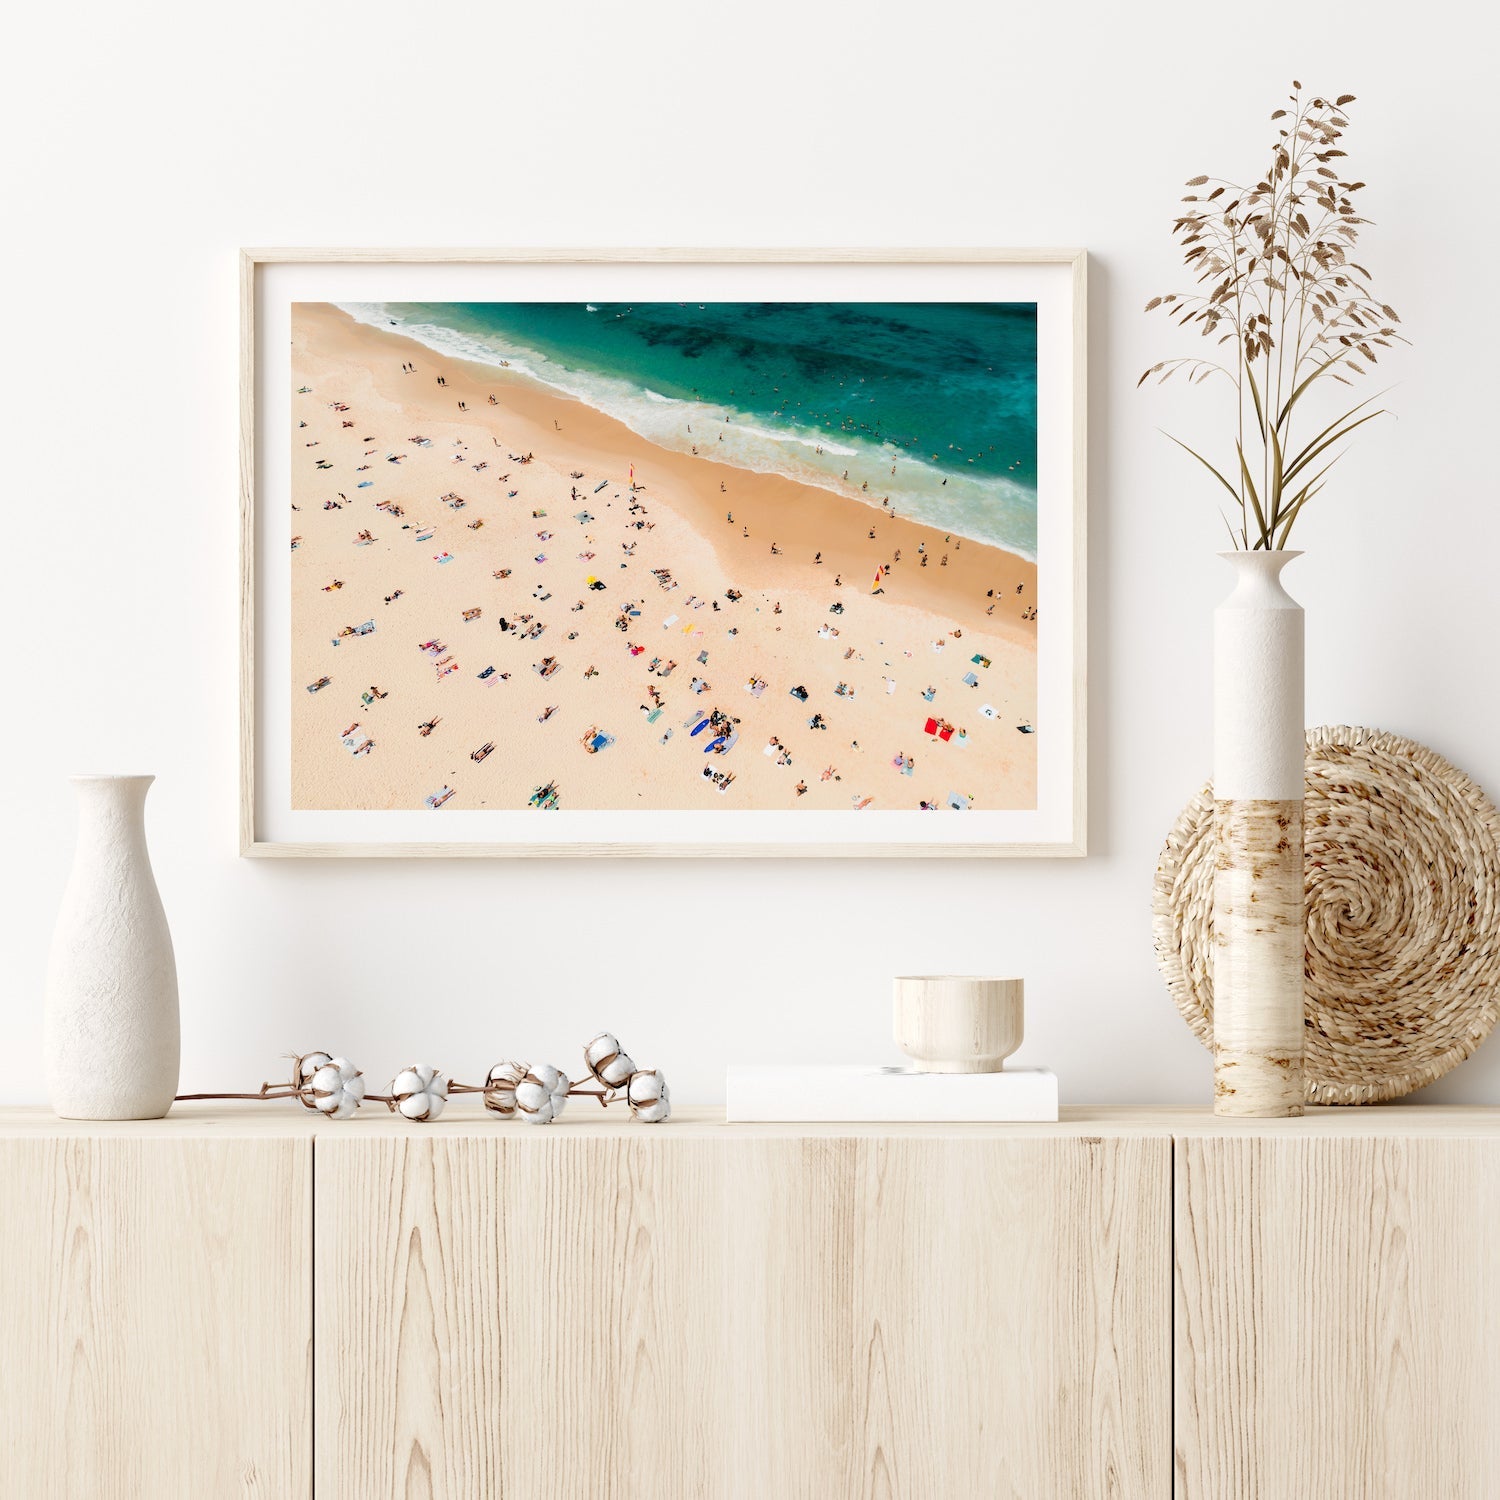 Bondi Beach Summer Day III - Peter Yan Studio